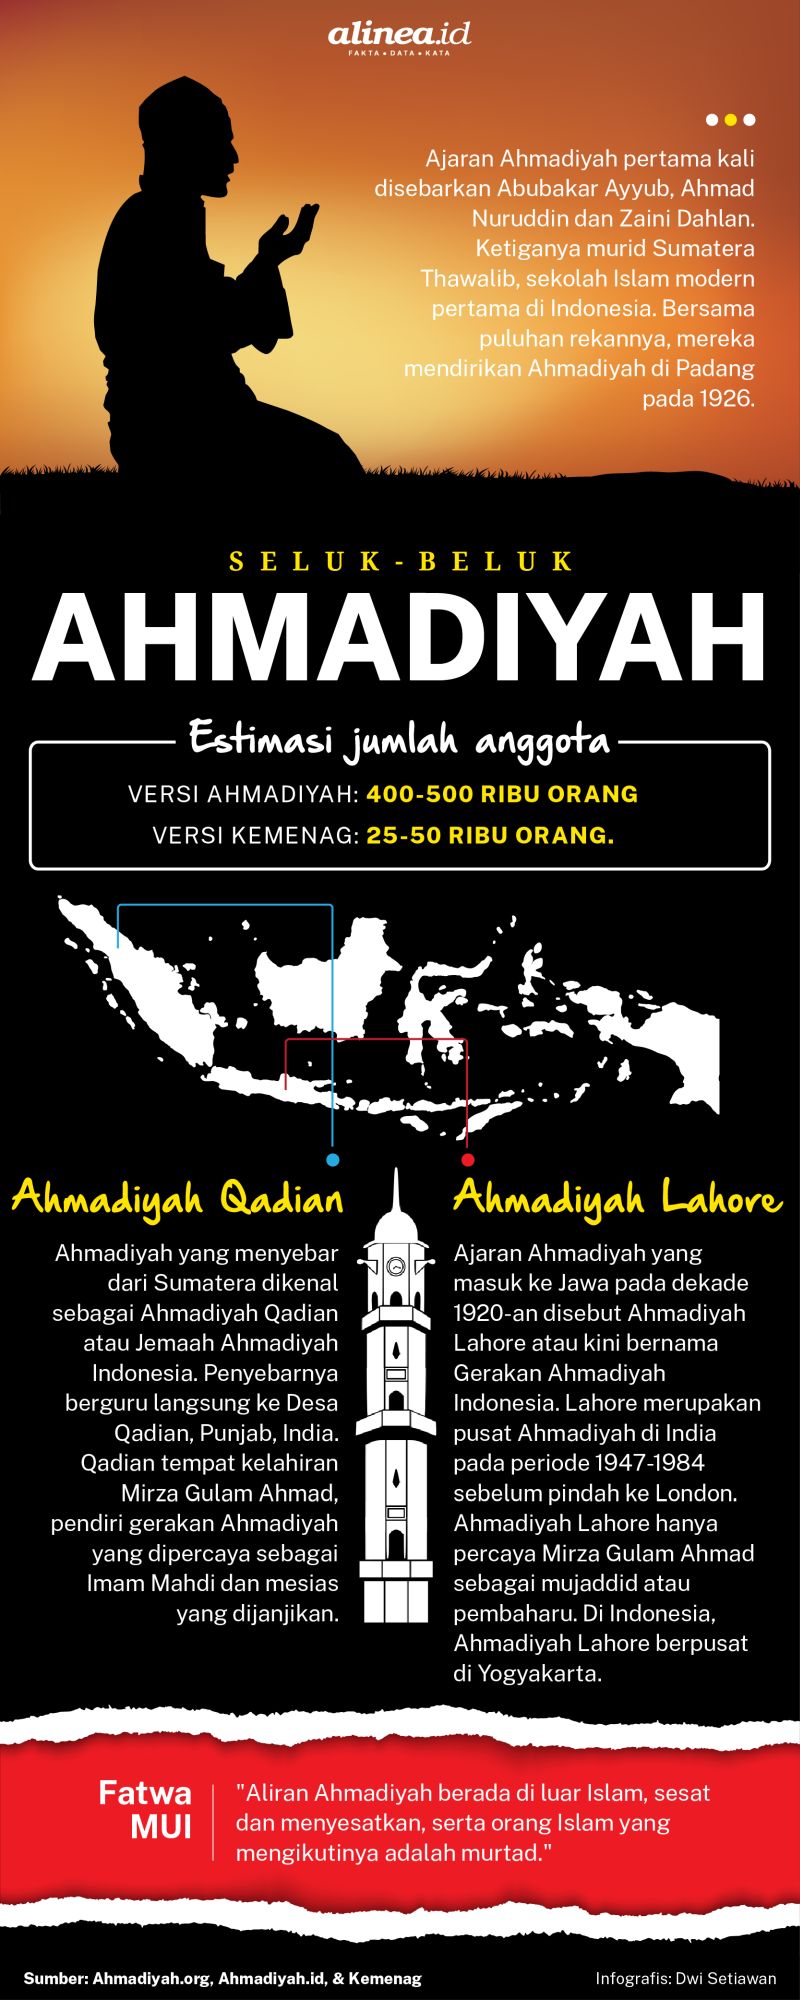 Ajaran ahmadiyah